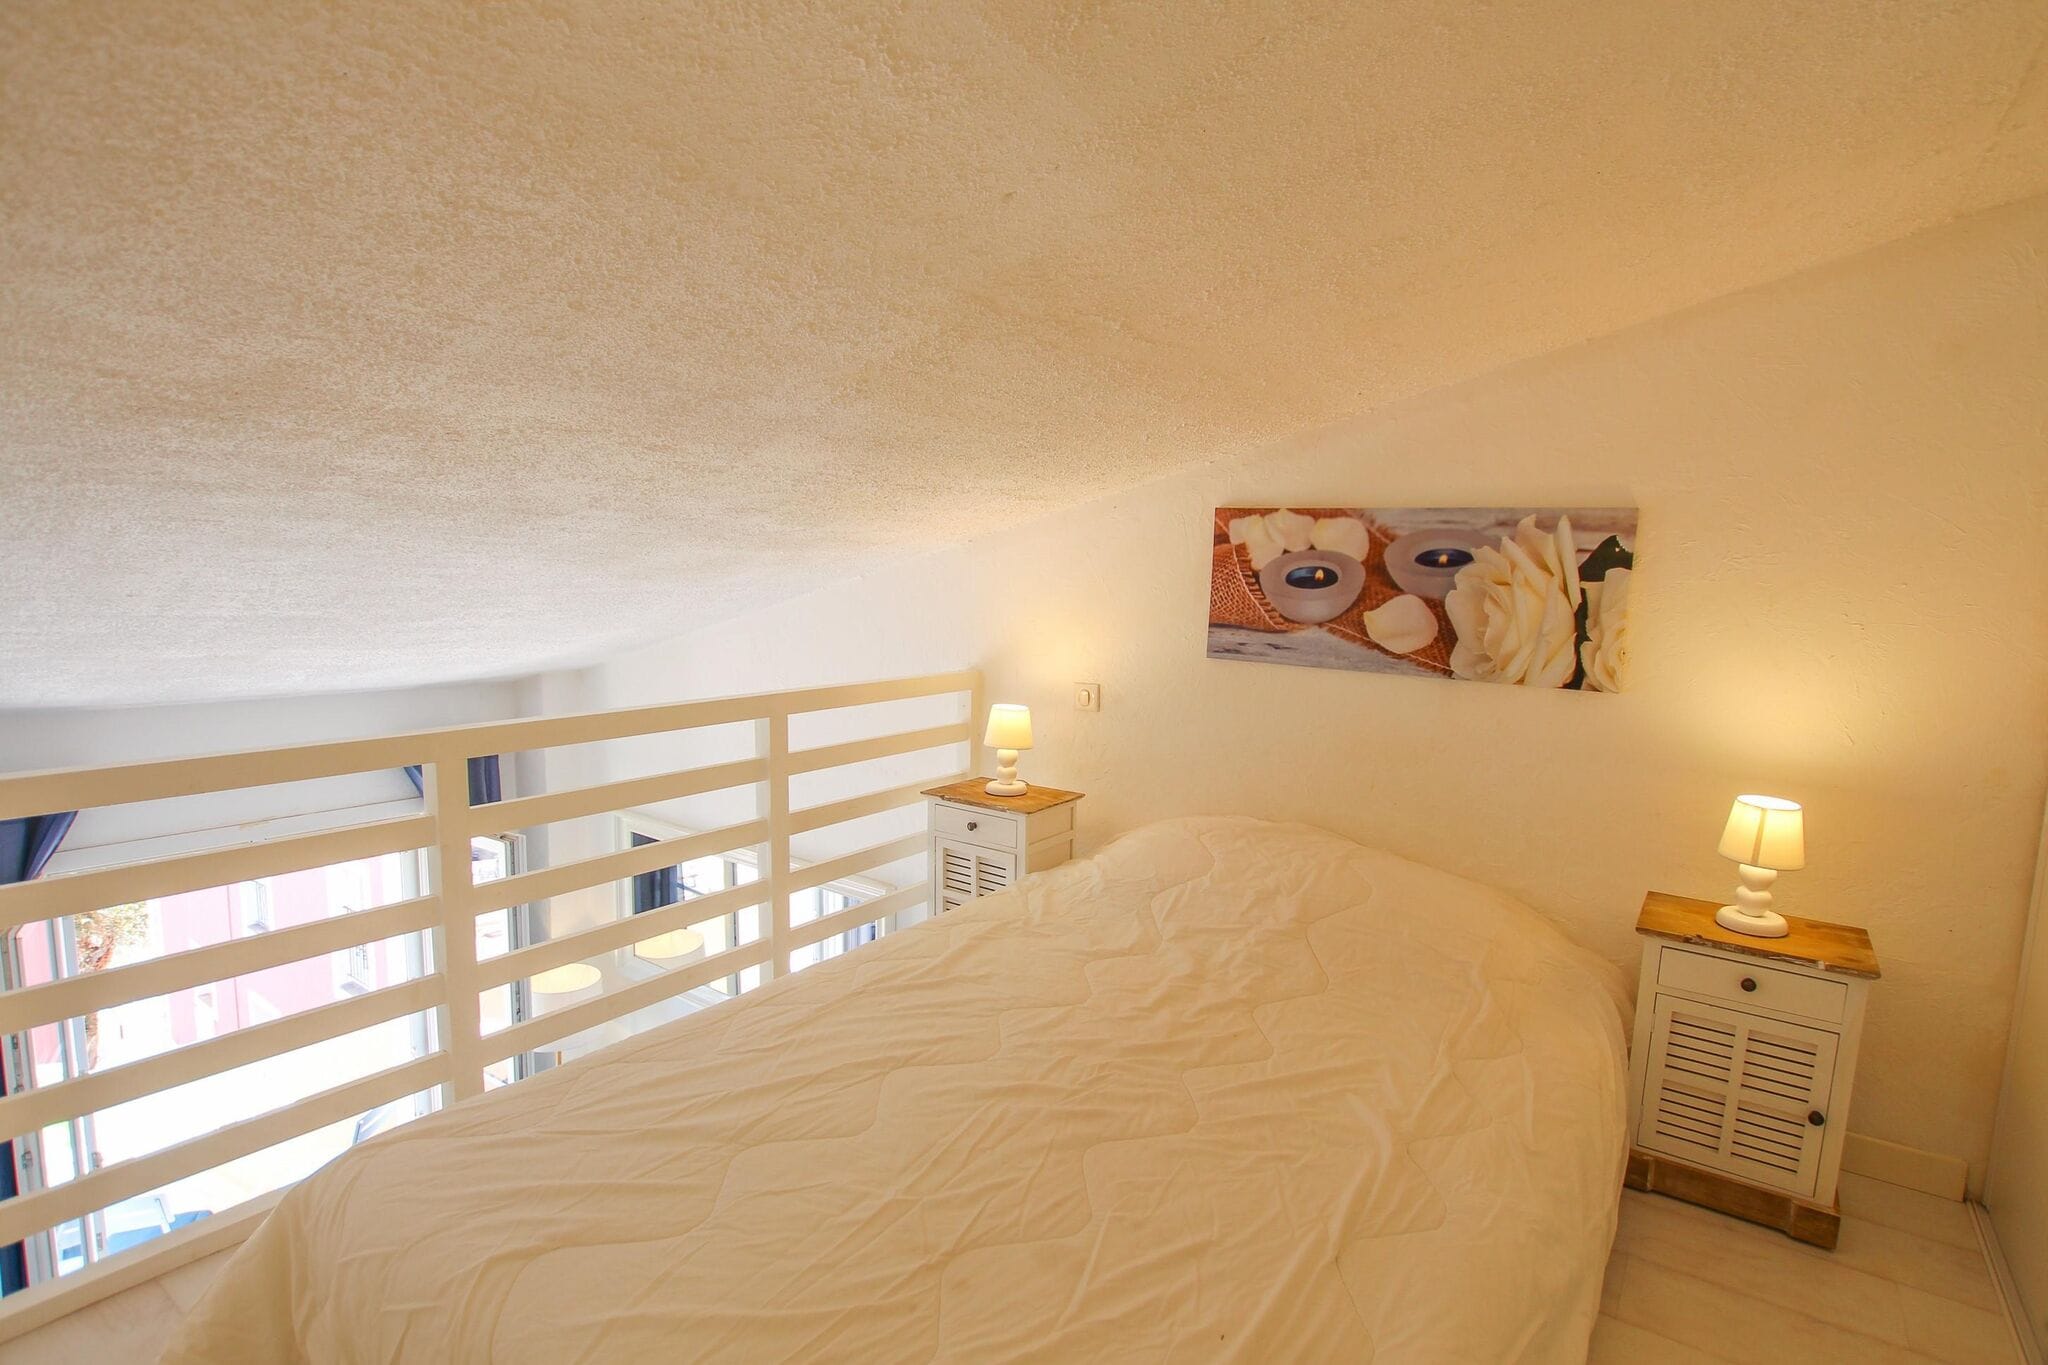 Maison de vacances confortable à Port Grimaud près de la plage